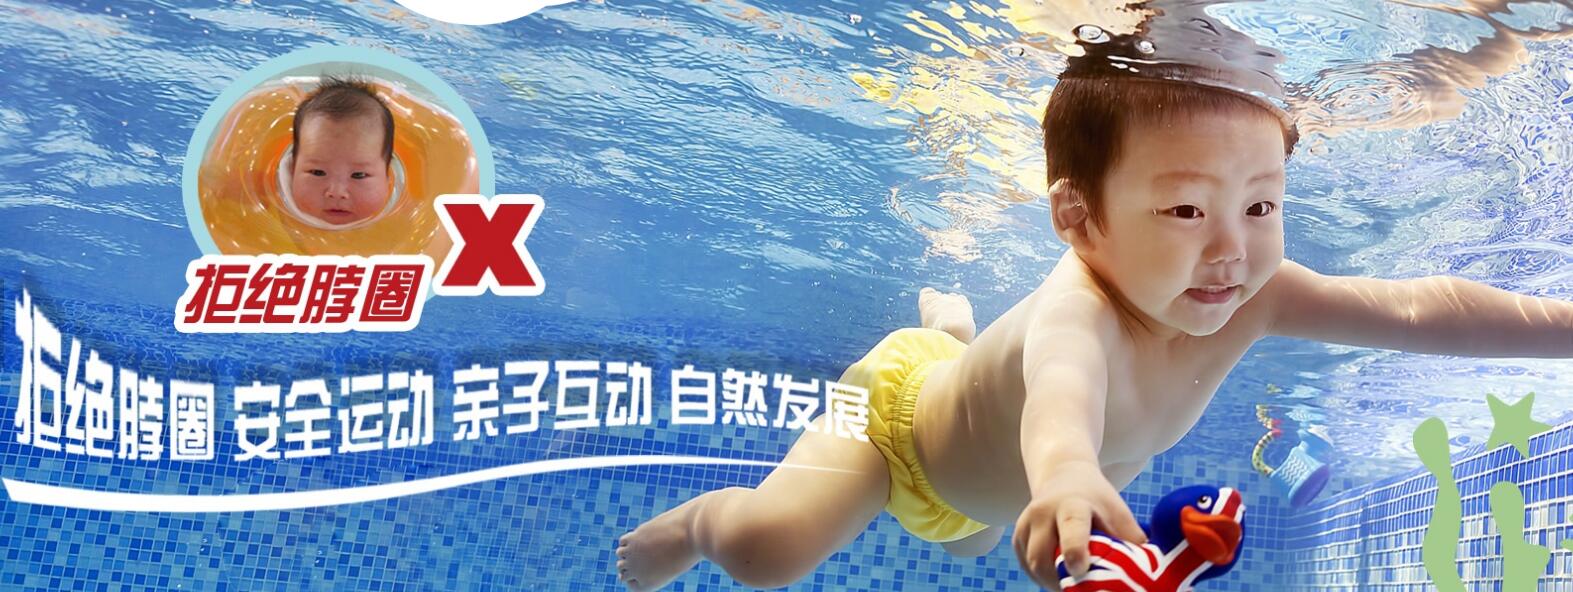 乐游宝宝亲子游泳加盟招商广告图2